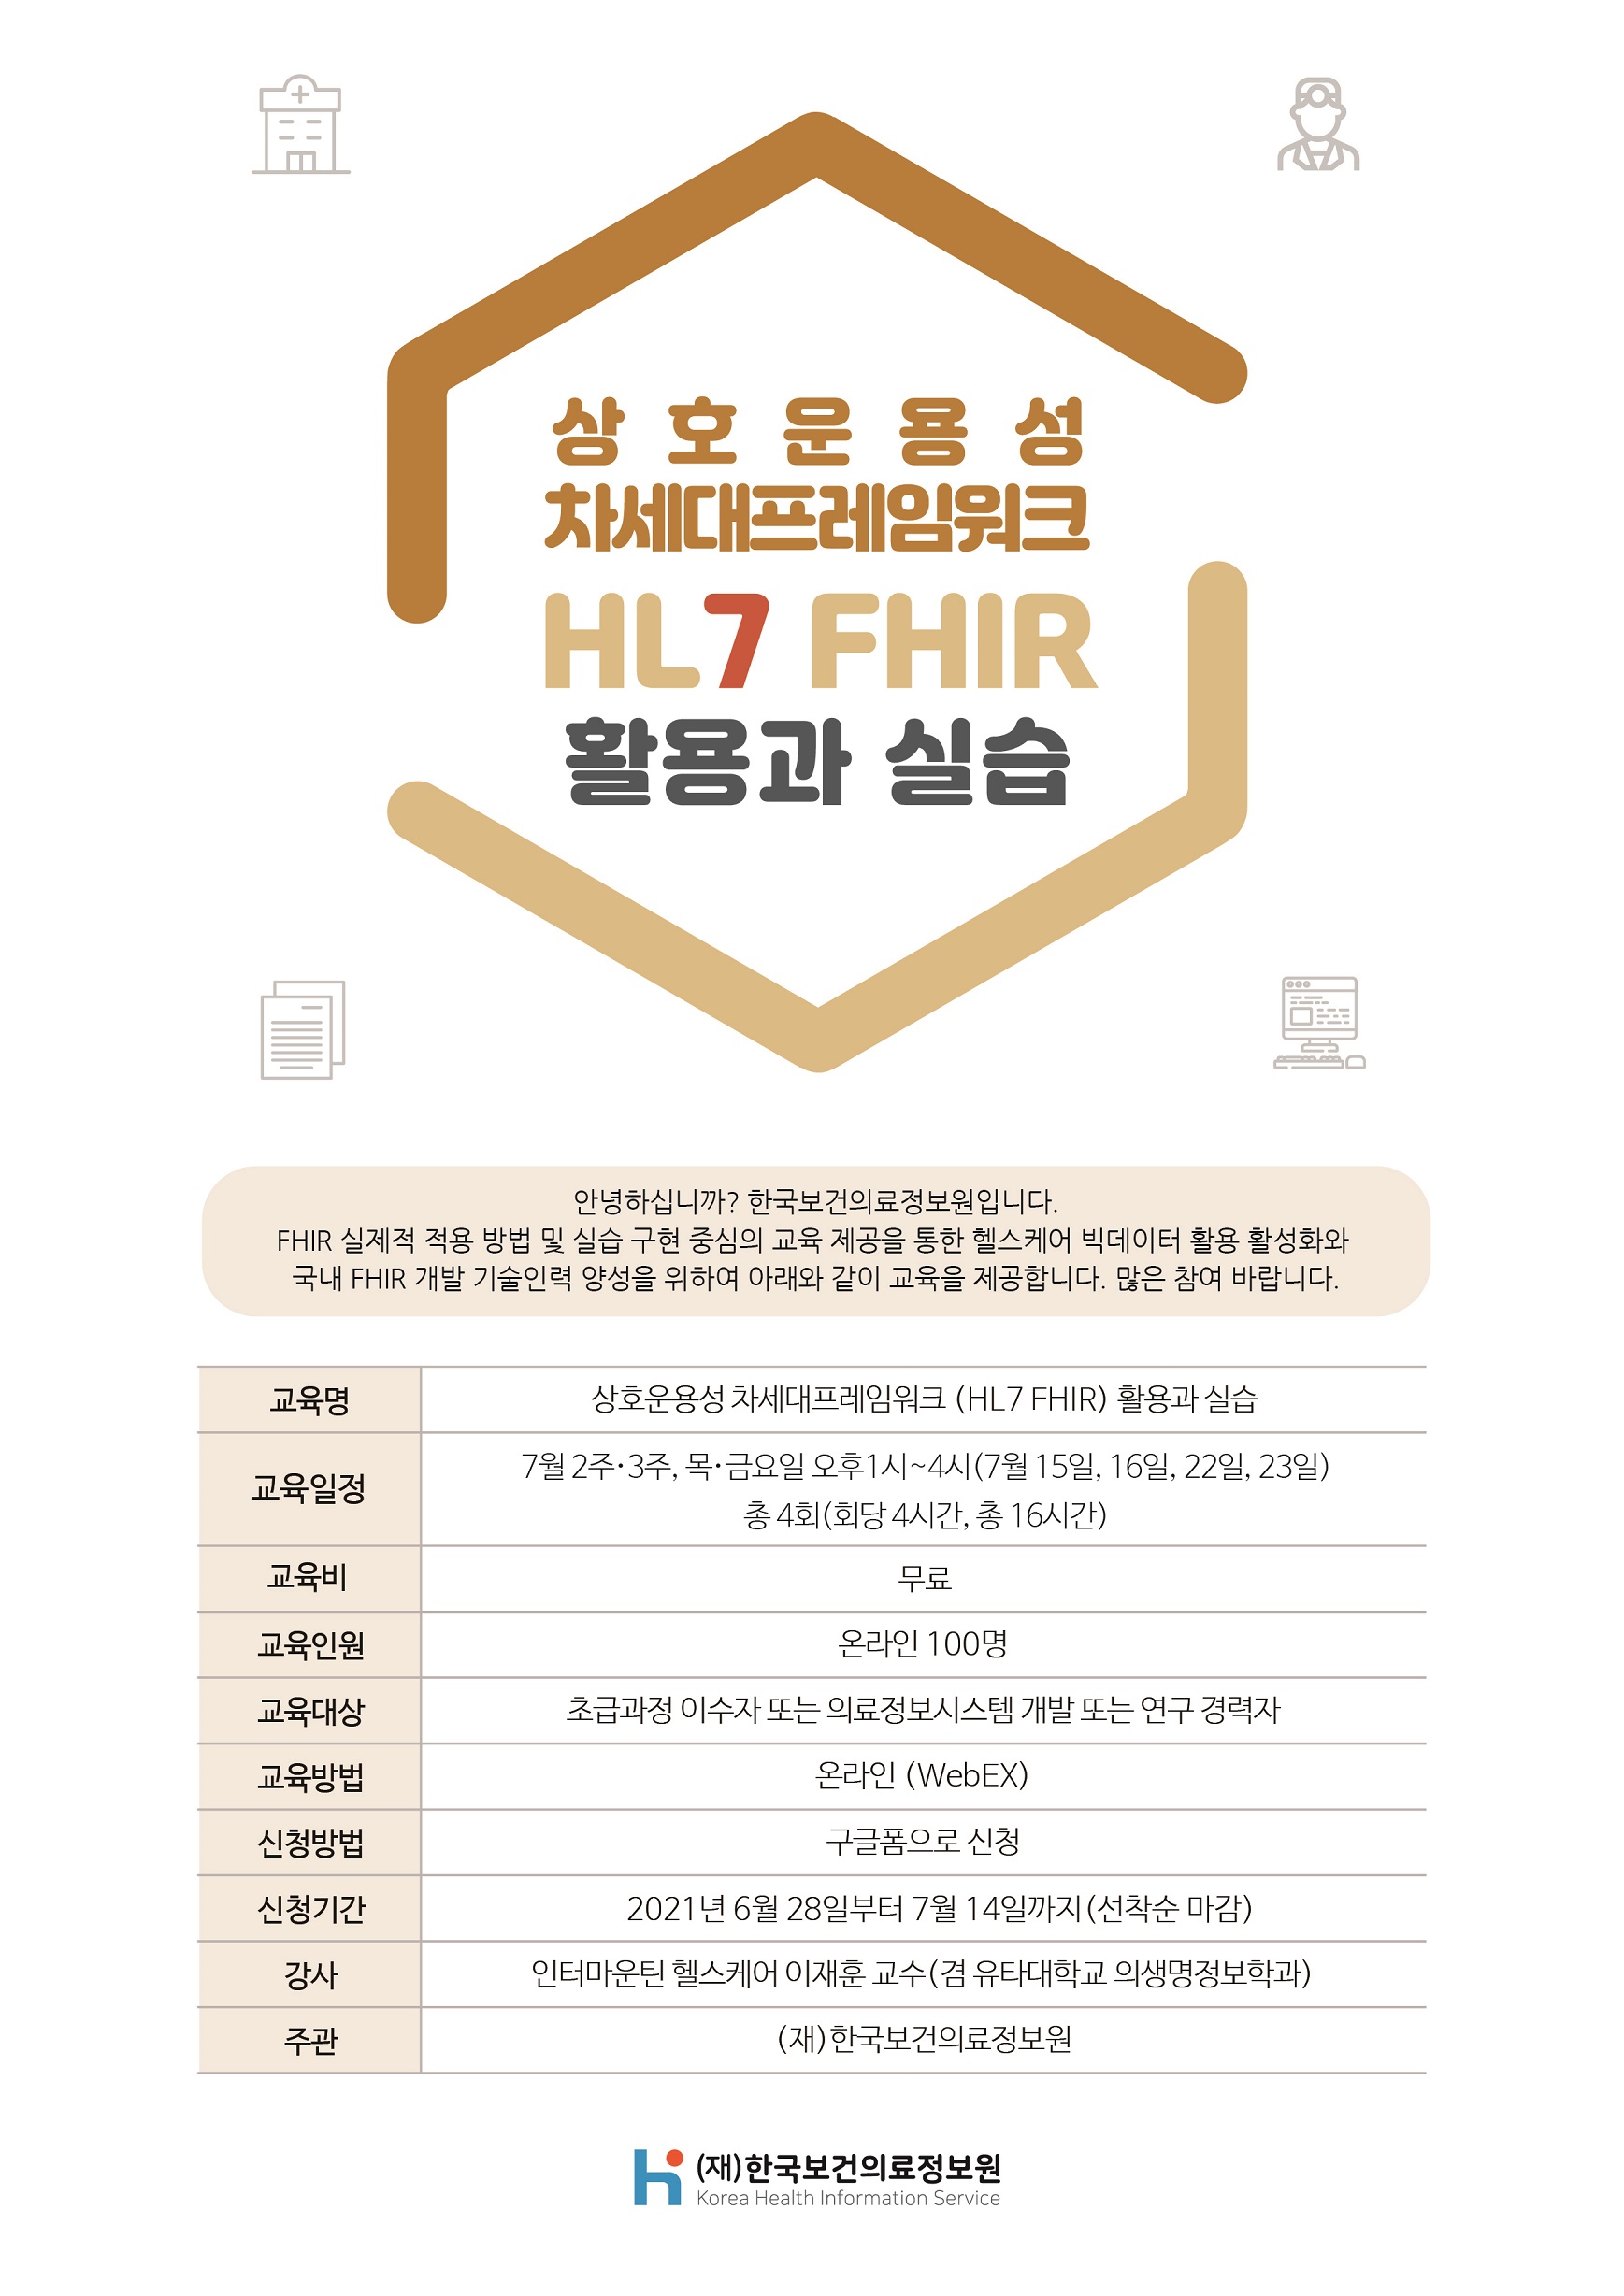 [한국보건의료정보원] HL7 교육홍보 포스터